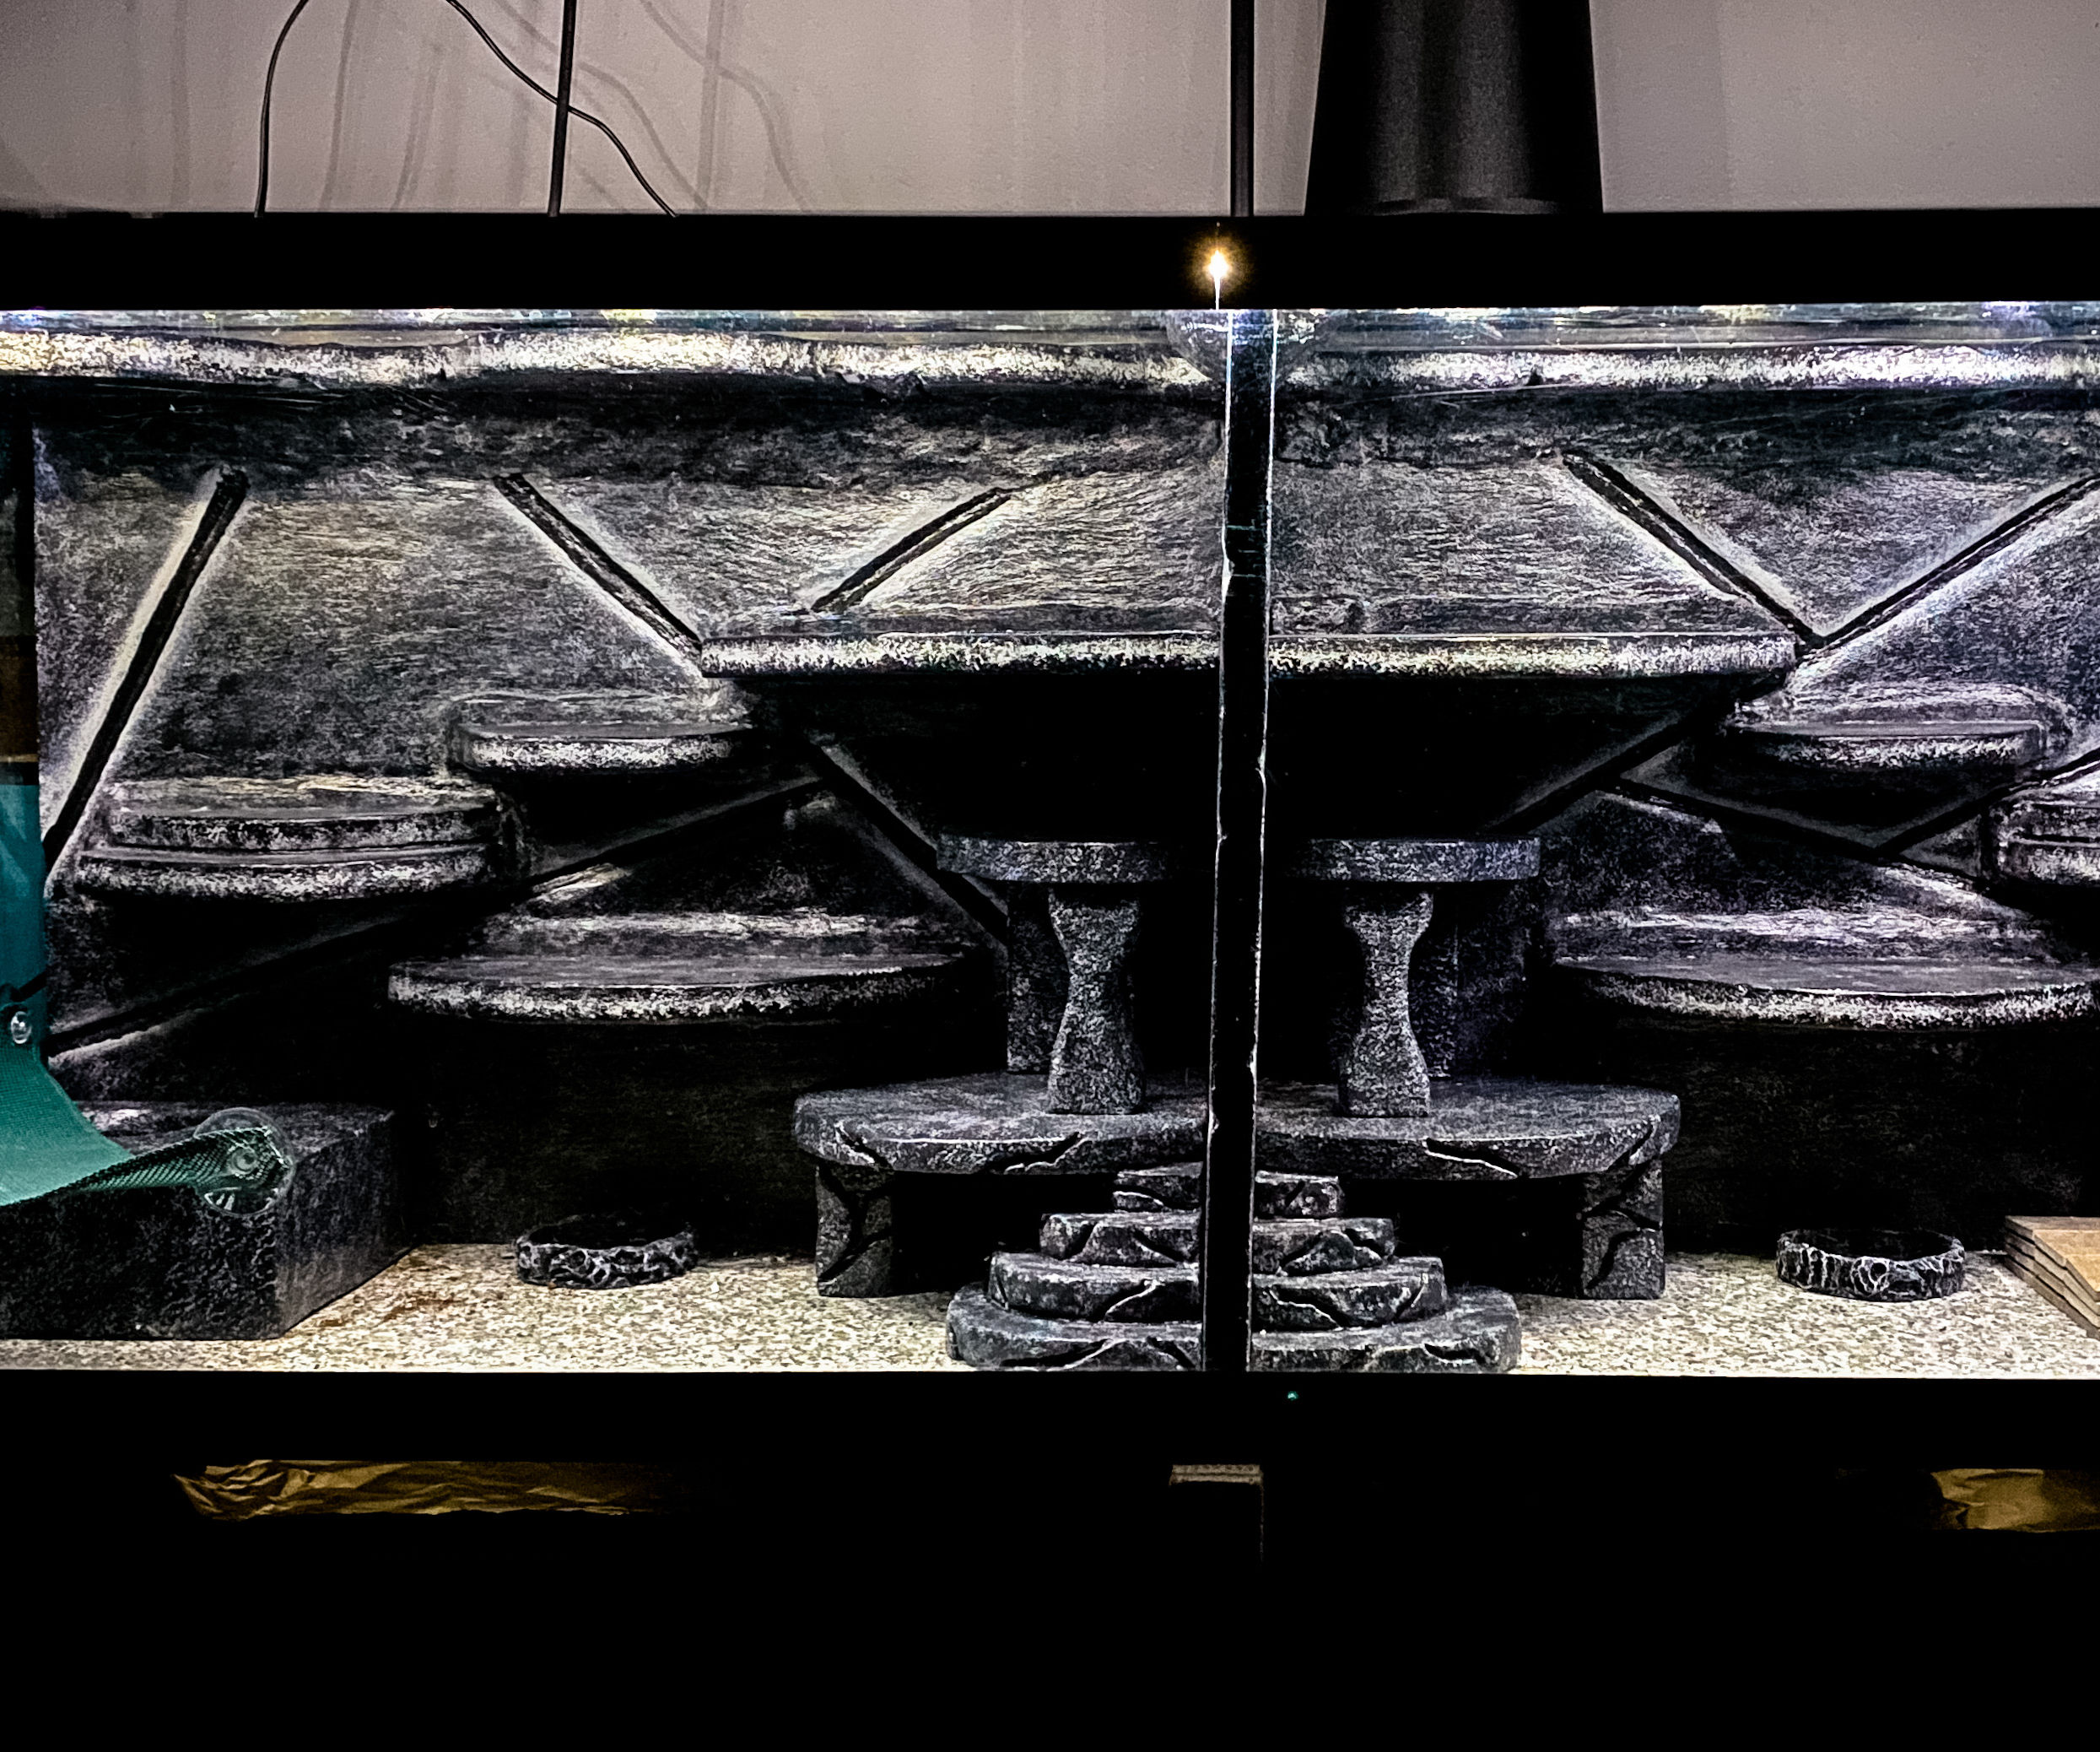 DIY Split Aquarium / Terrarium Background for Reptiles